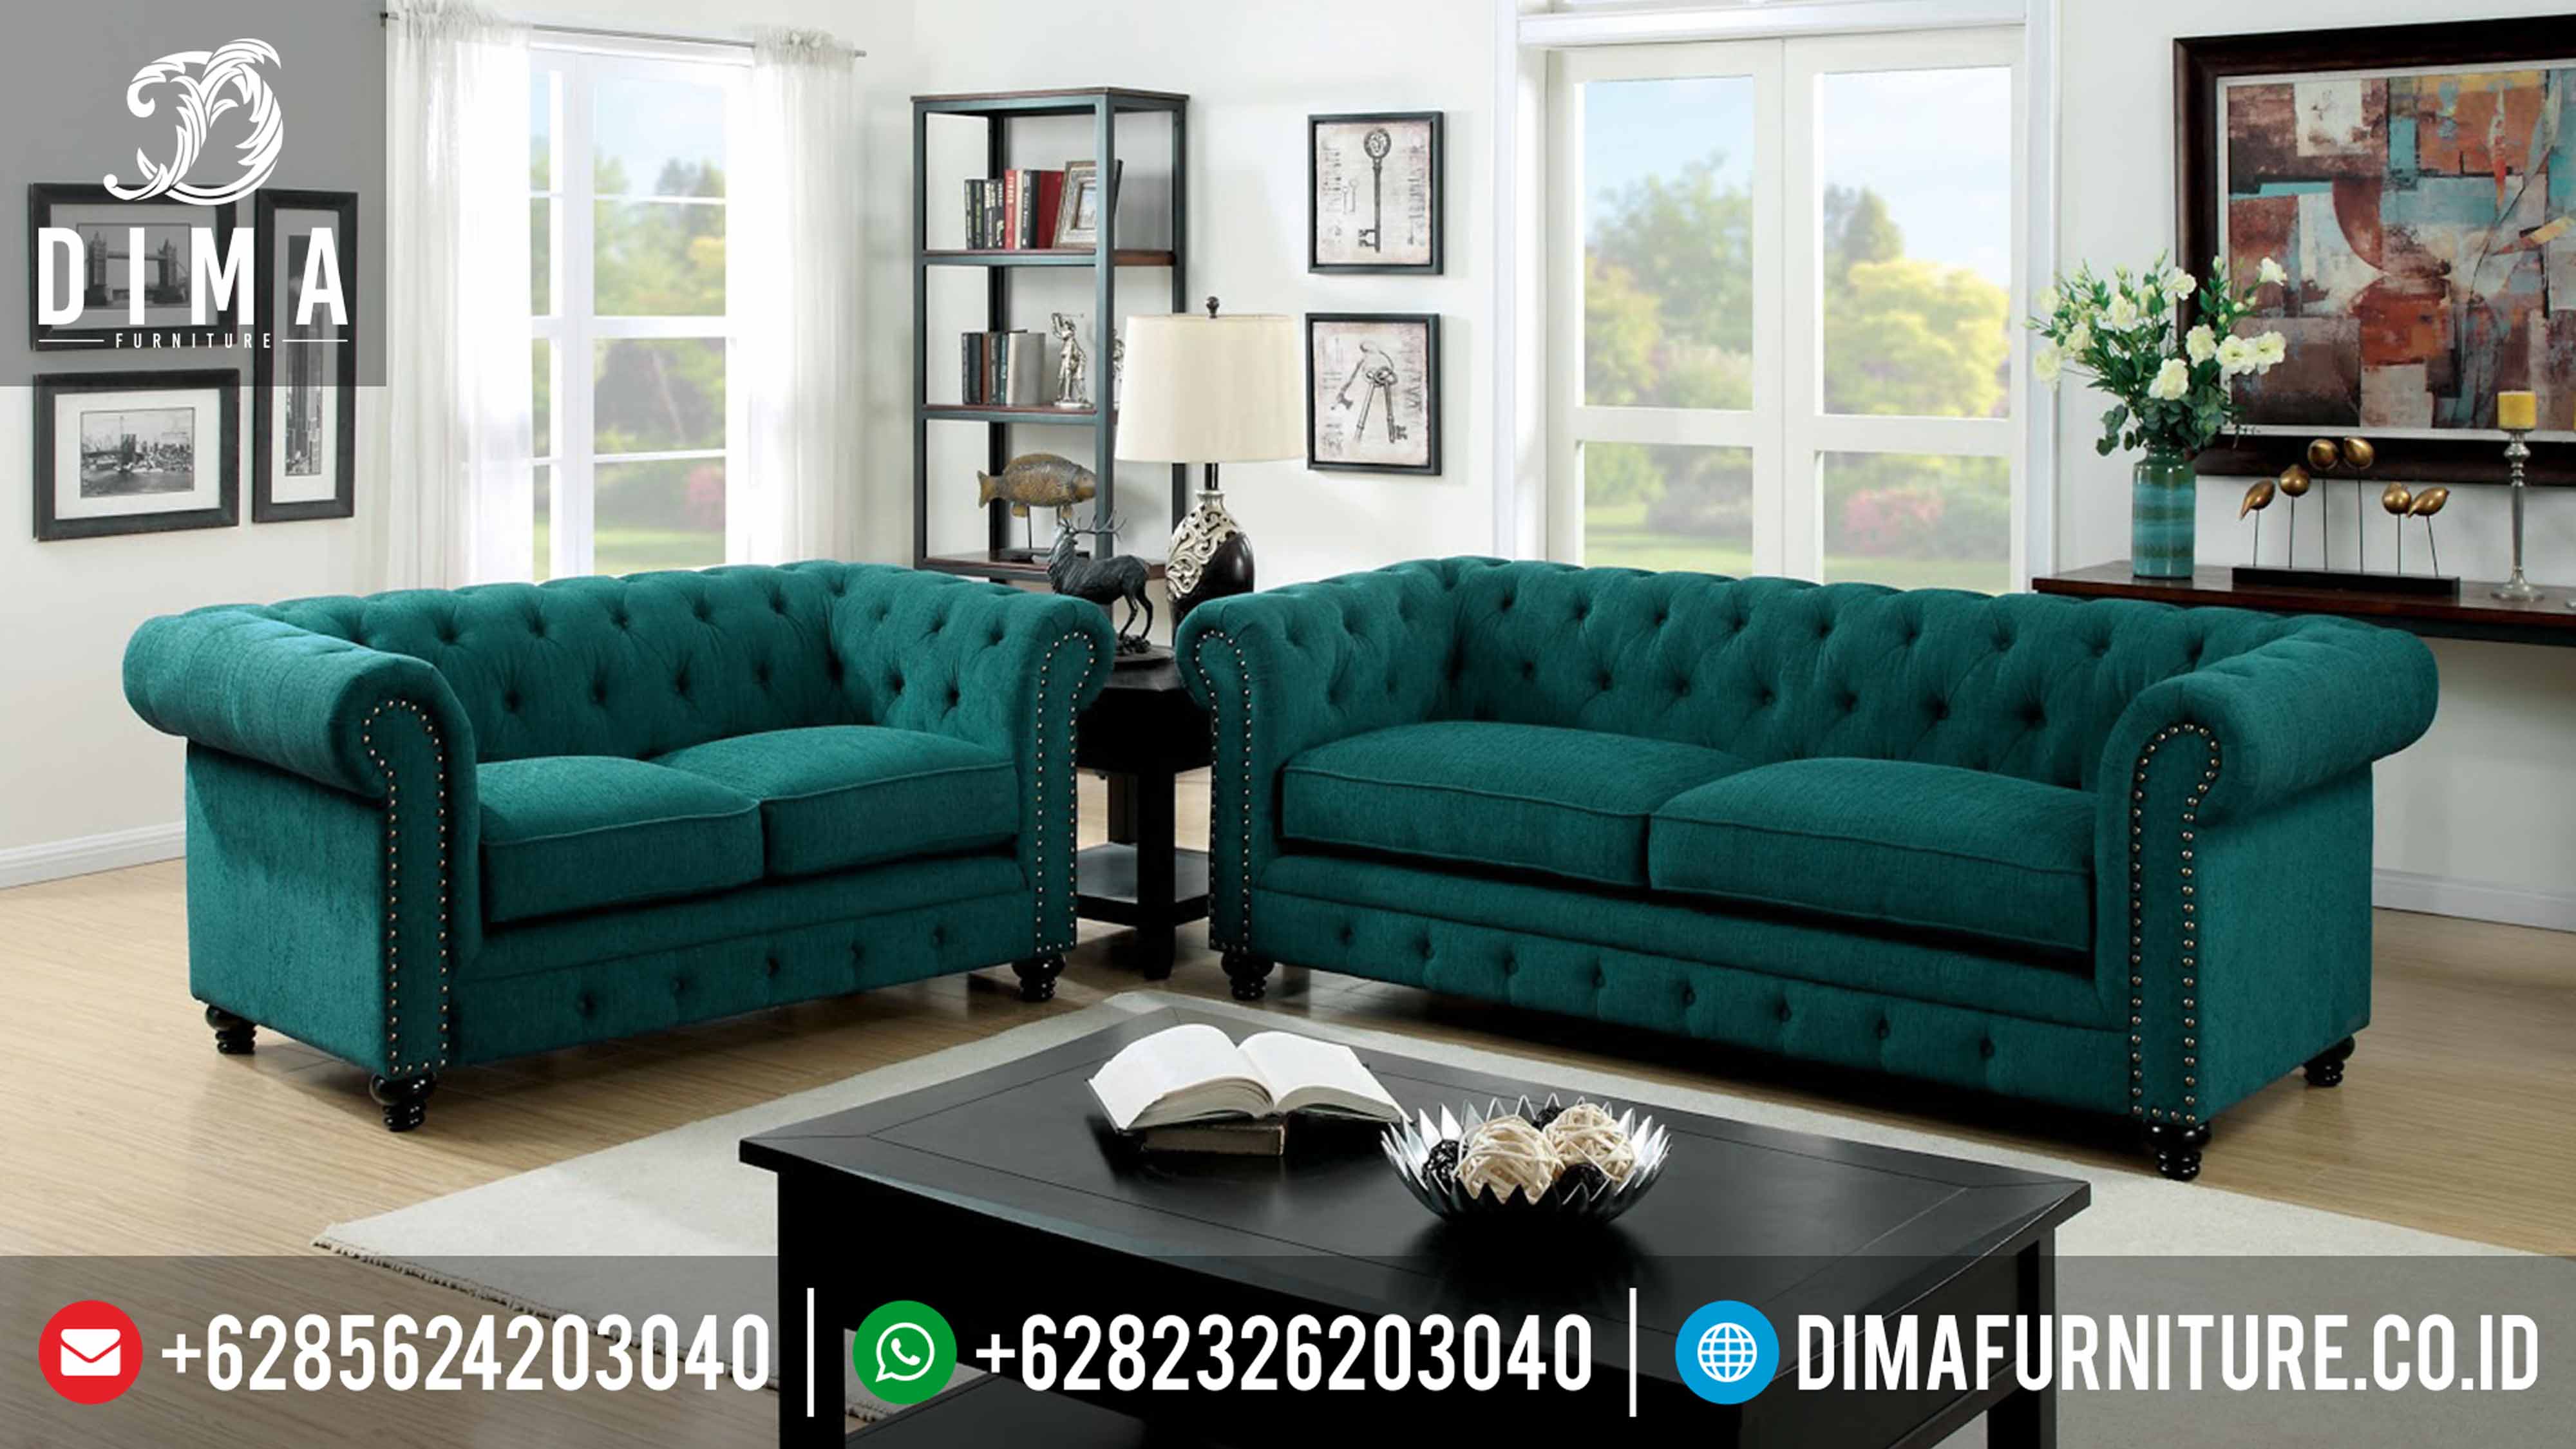 Sofa Tamu Minimalis Terbaru Vintage 2017 DF 0294 Dima Furniture Jepara